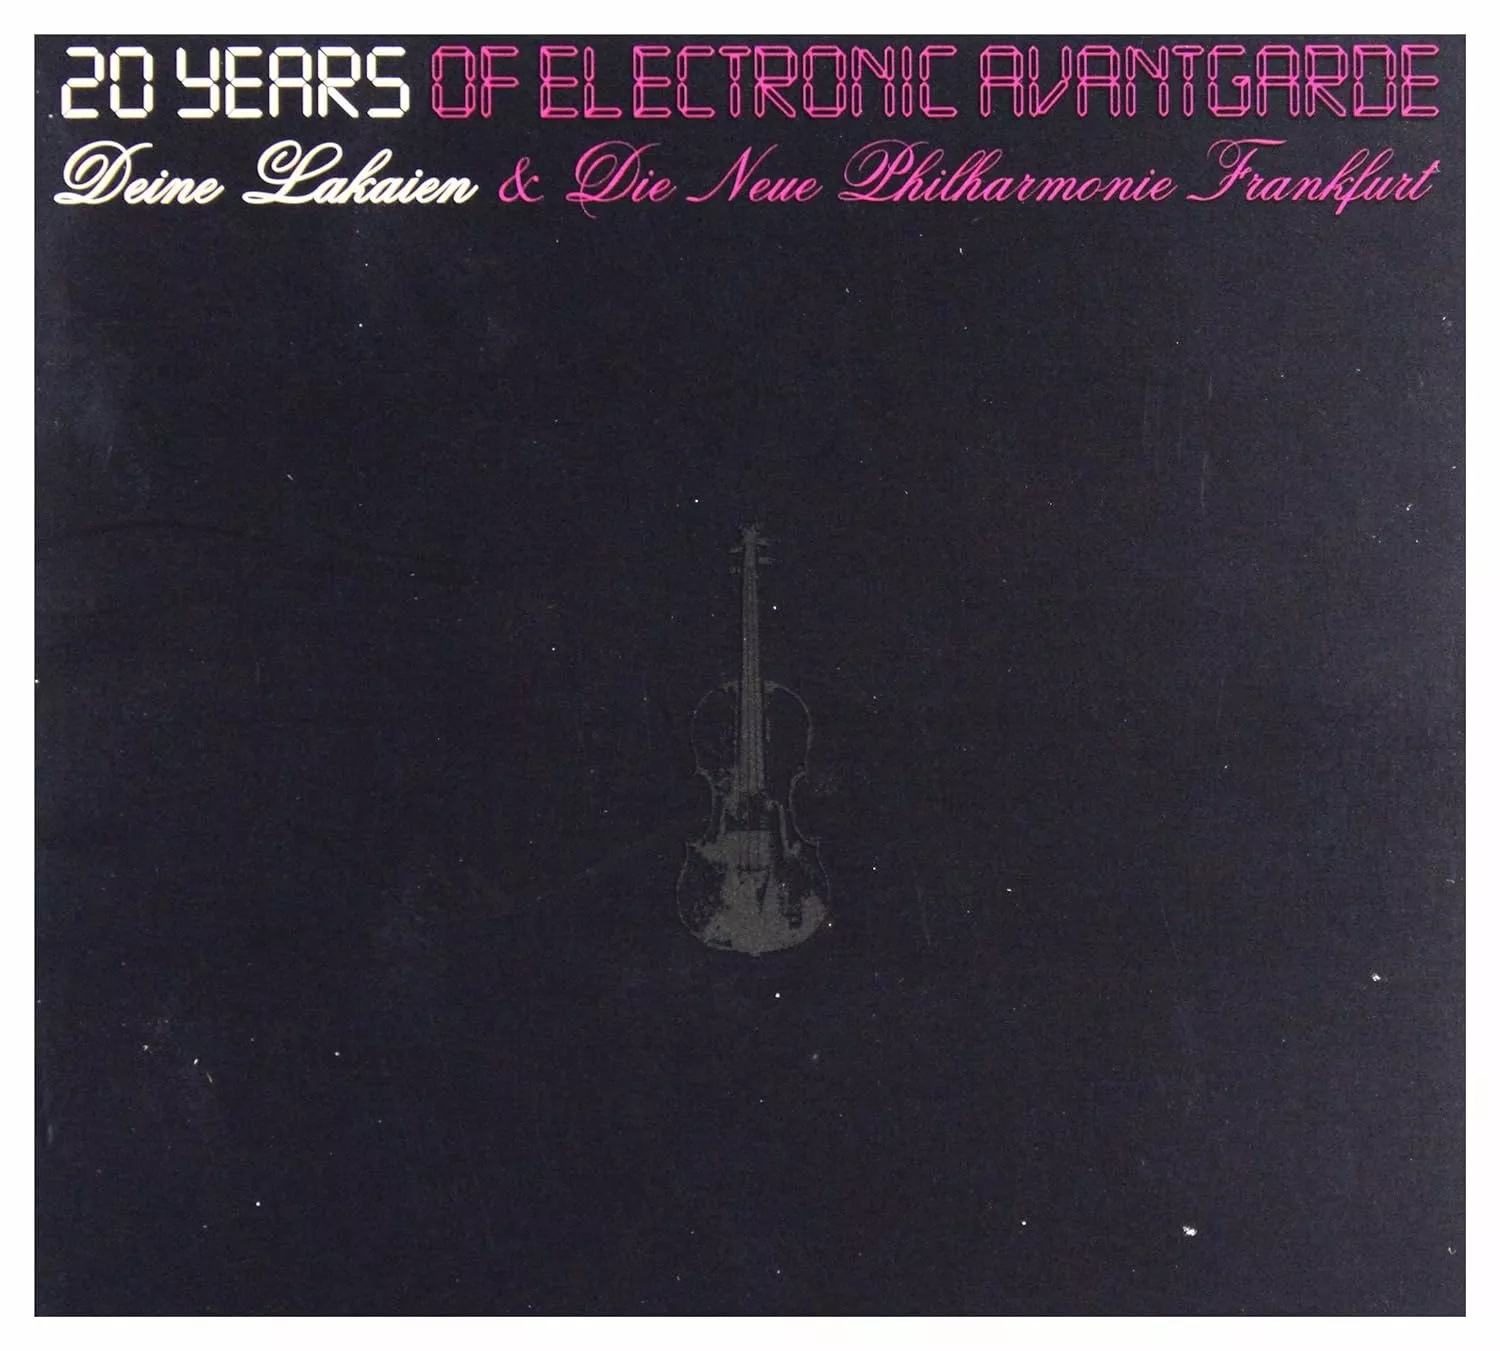 DEINE LAKAIEN & DIE NEUE PHILHARMONIE FRANKFURT - 20 Years Of Electronic Avantgarde [DIGIPAK DCD]